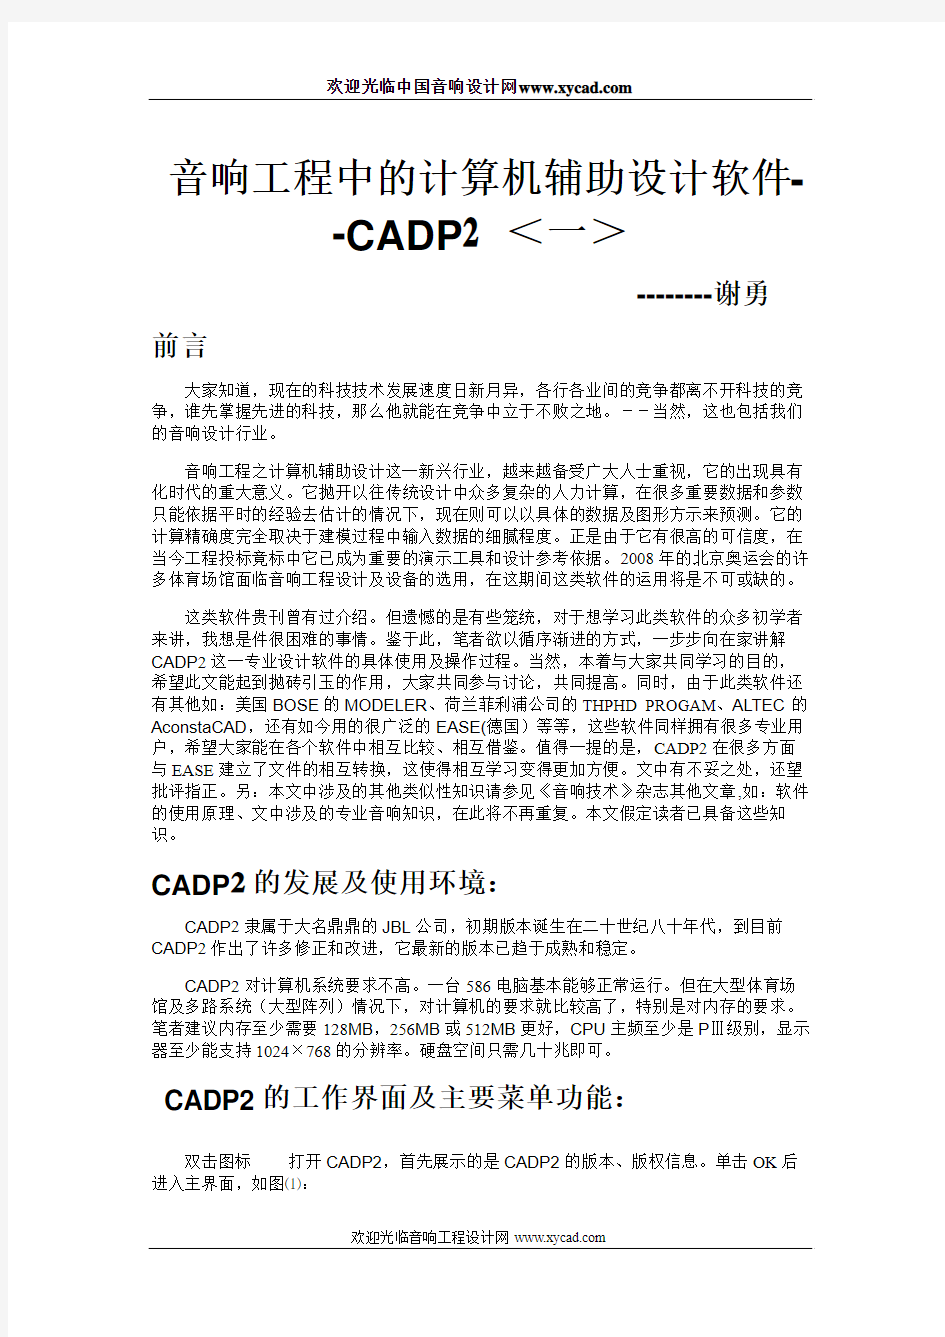 计算机辅助设计软件CADP2应用(一)